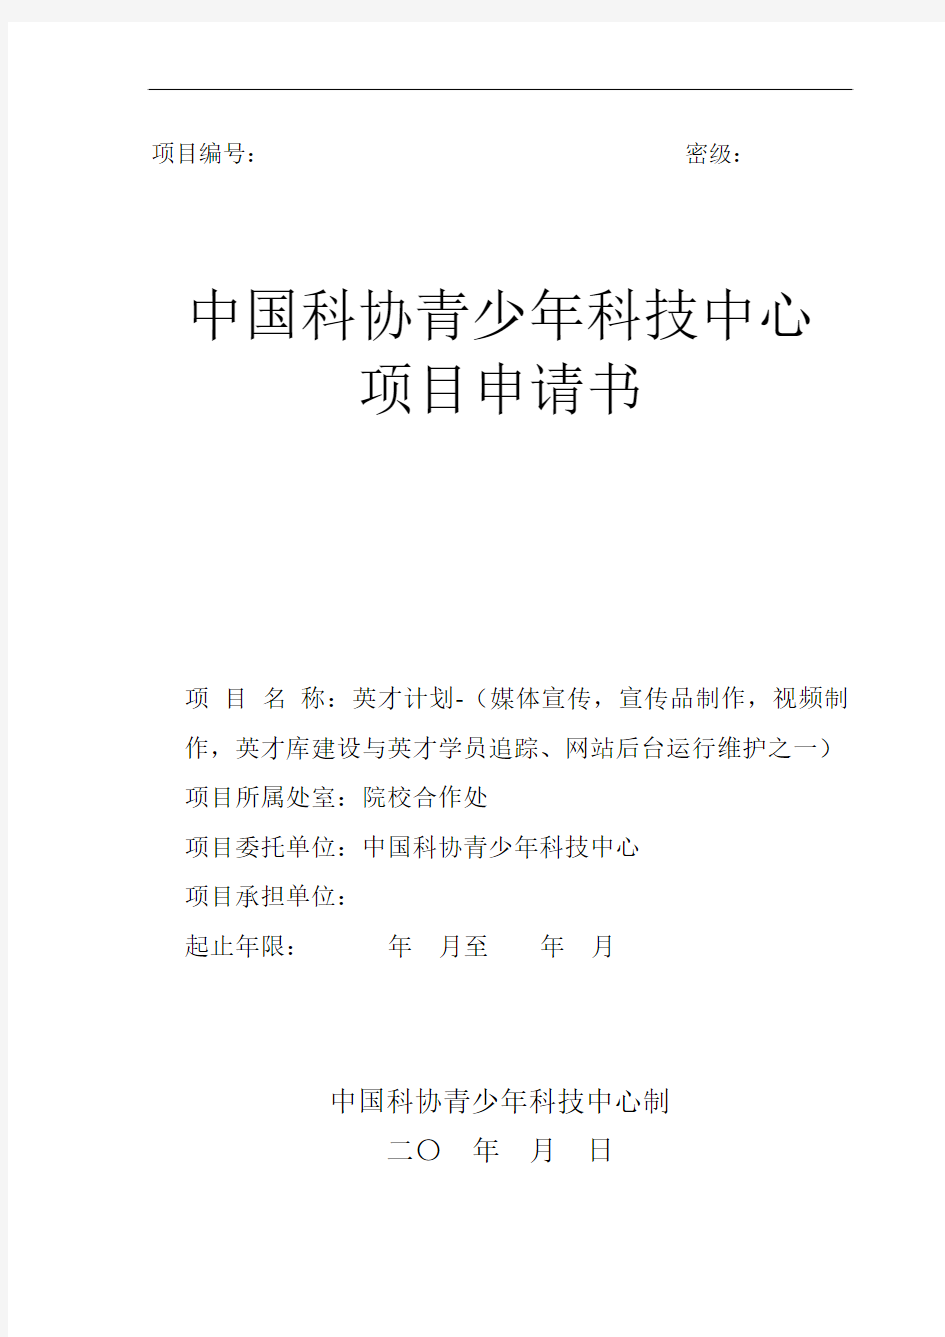 中国科协青少年科技中心项目申请书-英才计划